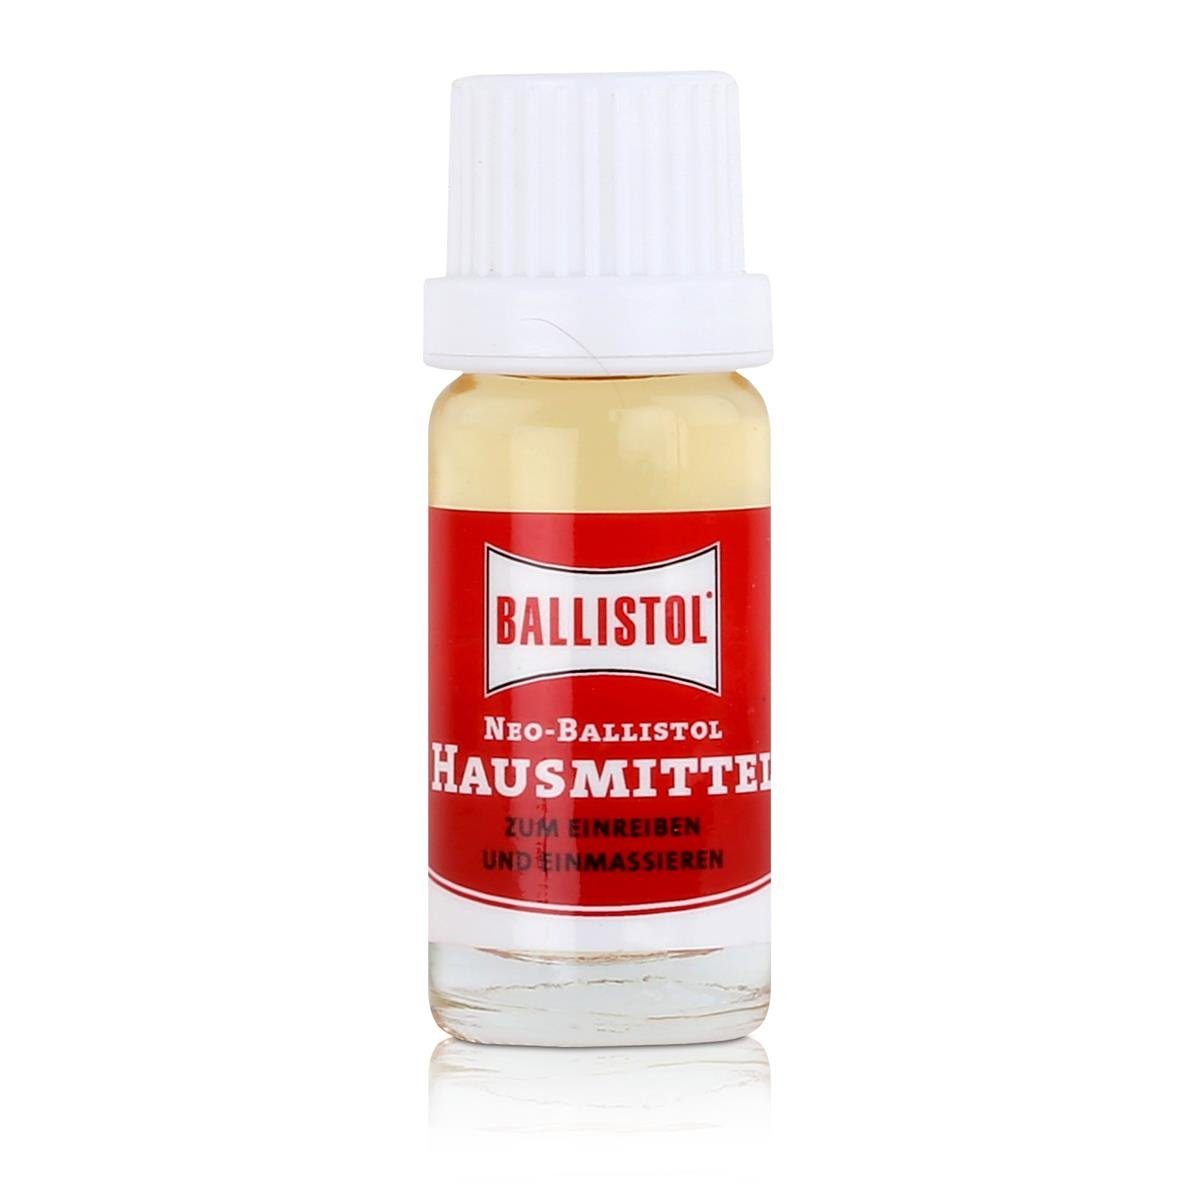 10ml Pack) Ballistol Tiefenwirkung mit Massageöl (2er Neo-Hausmittel Ballistol